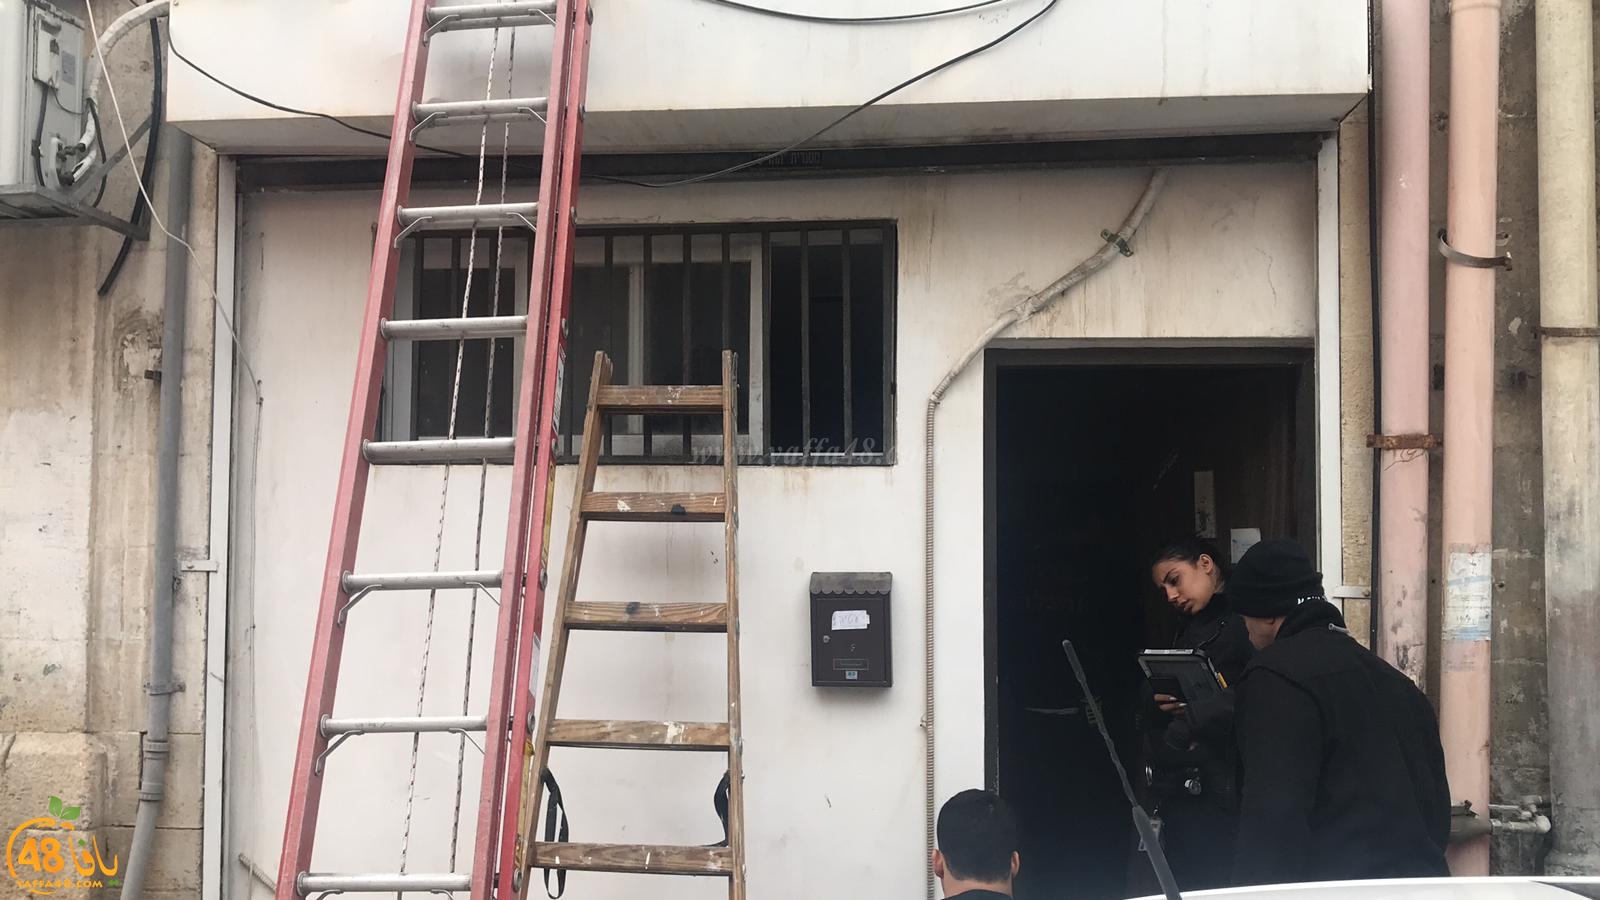  فيديو: طواقم الانقاذ تقتحم شقة بيافا بعد محاولة سيدة الانتحار